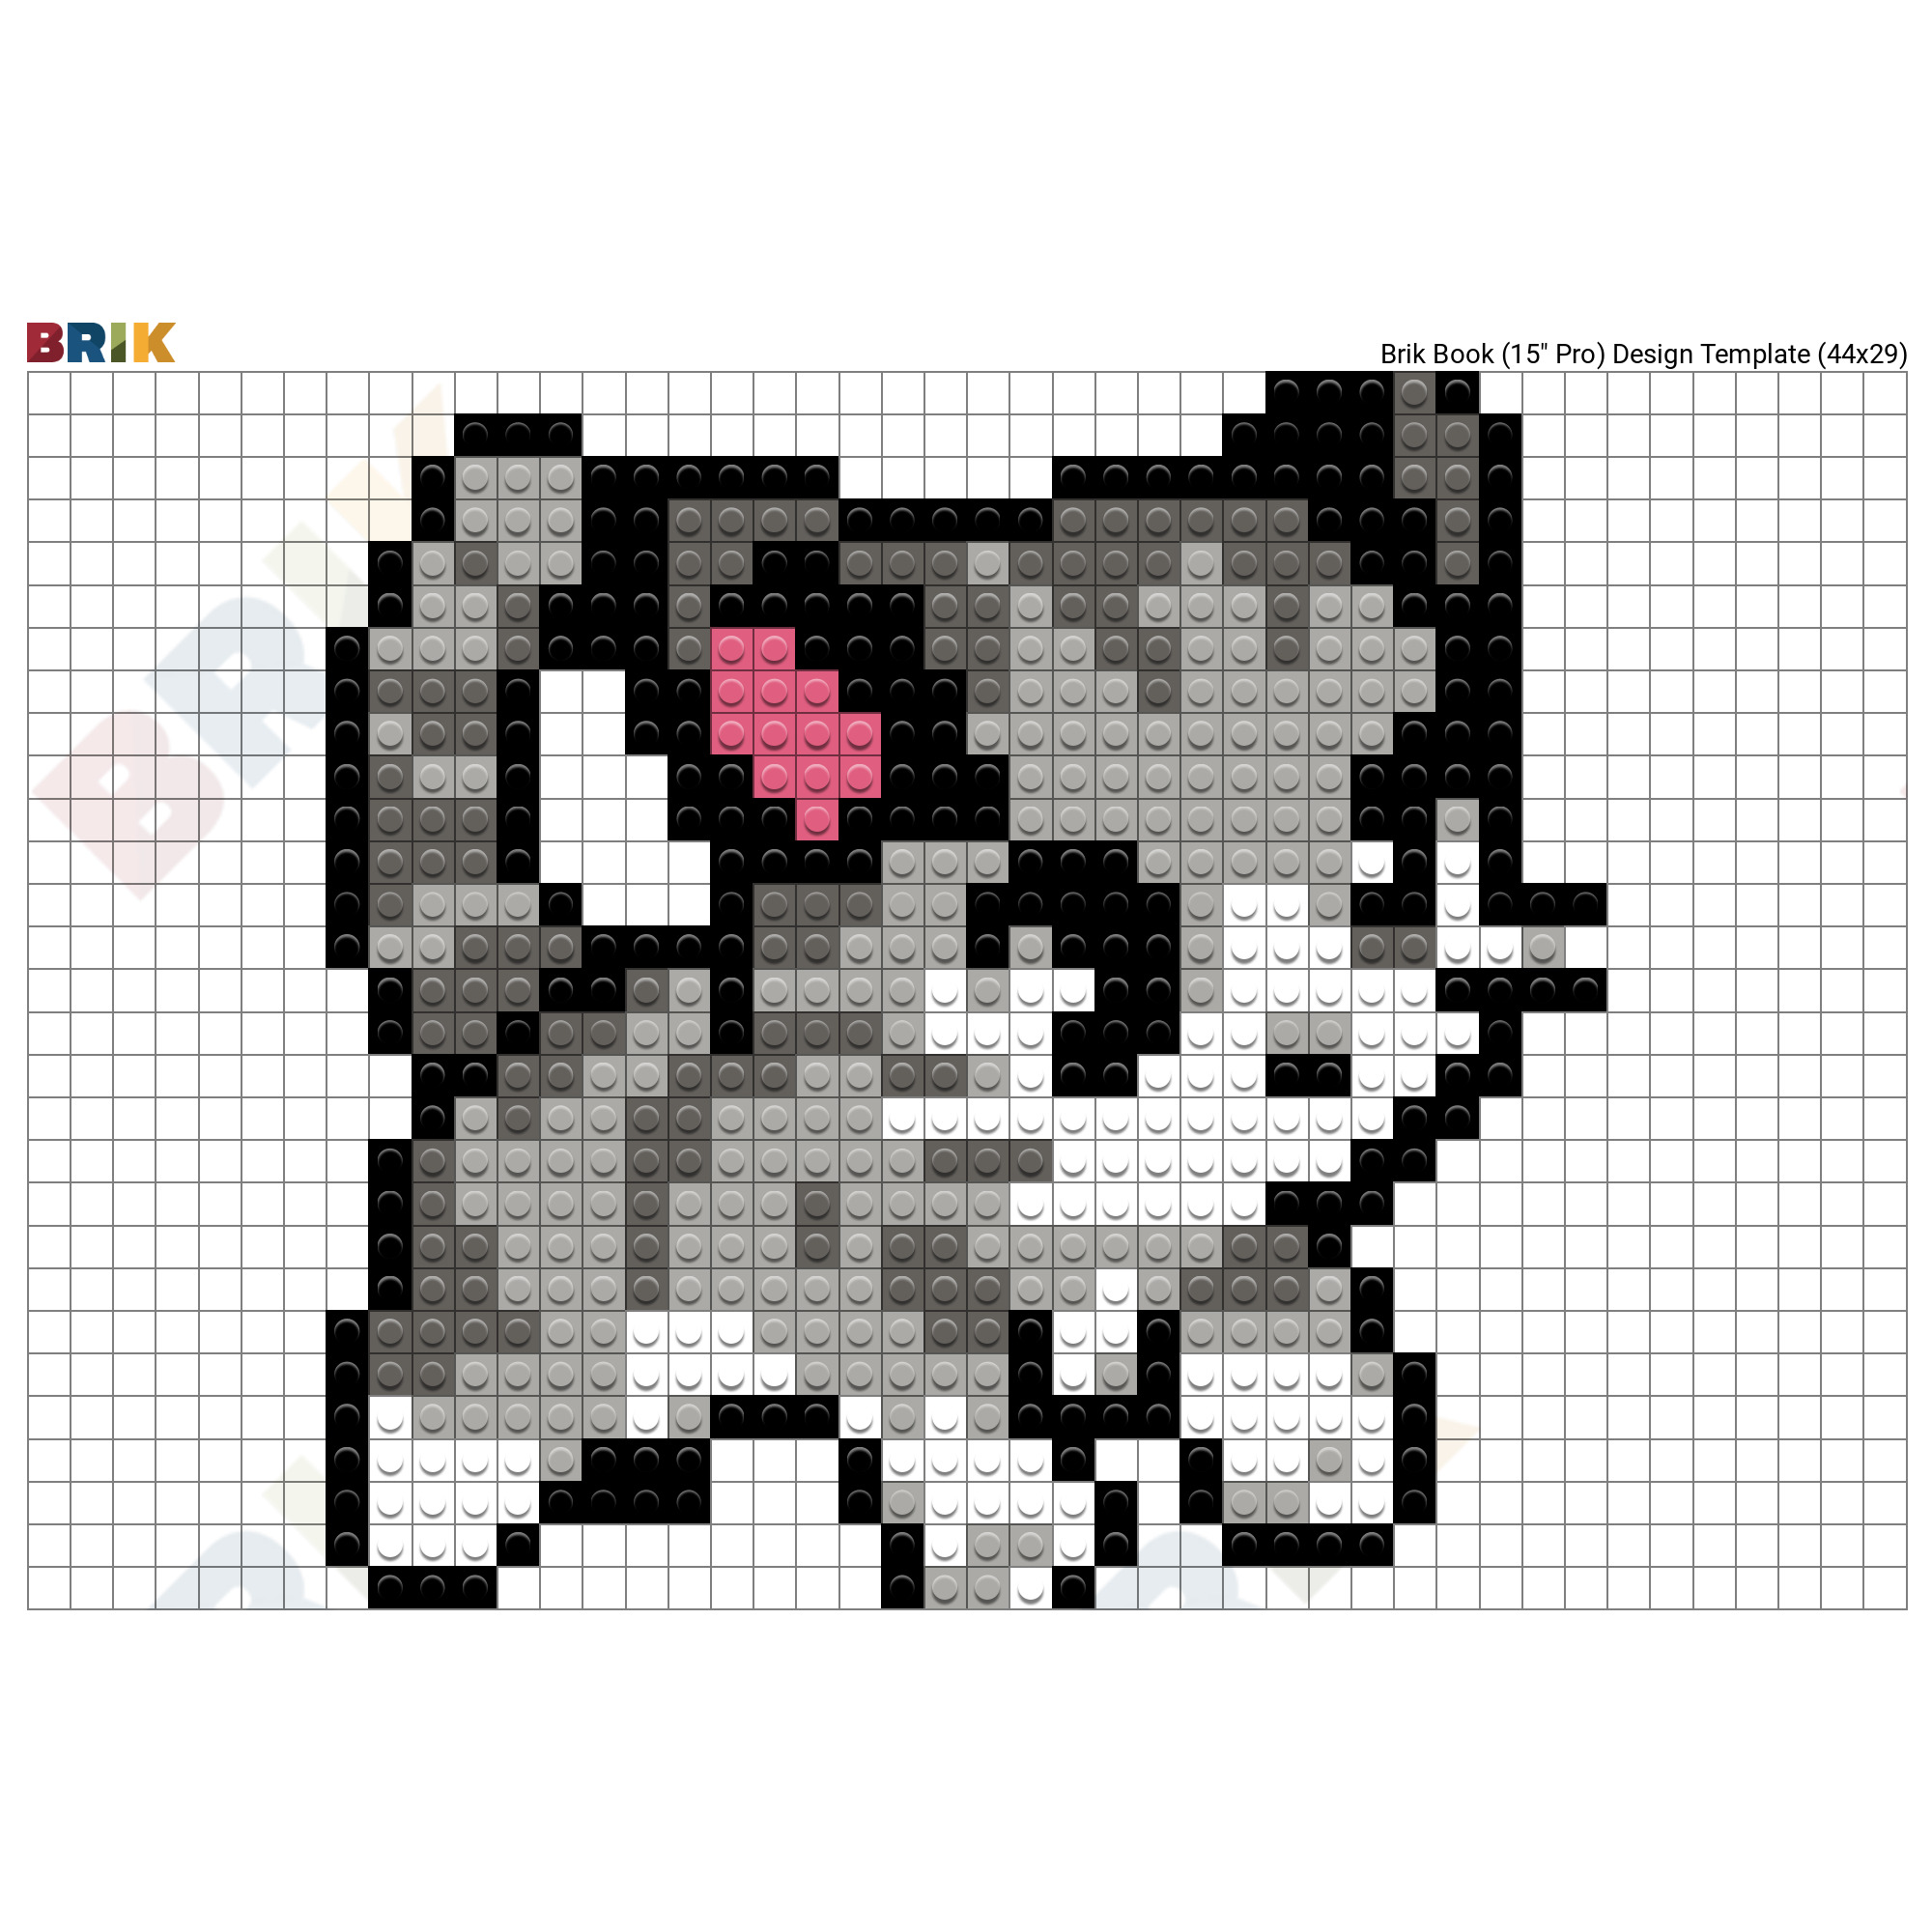 Making a pixel art of a kitten in HTML — Steemit